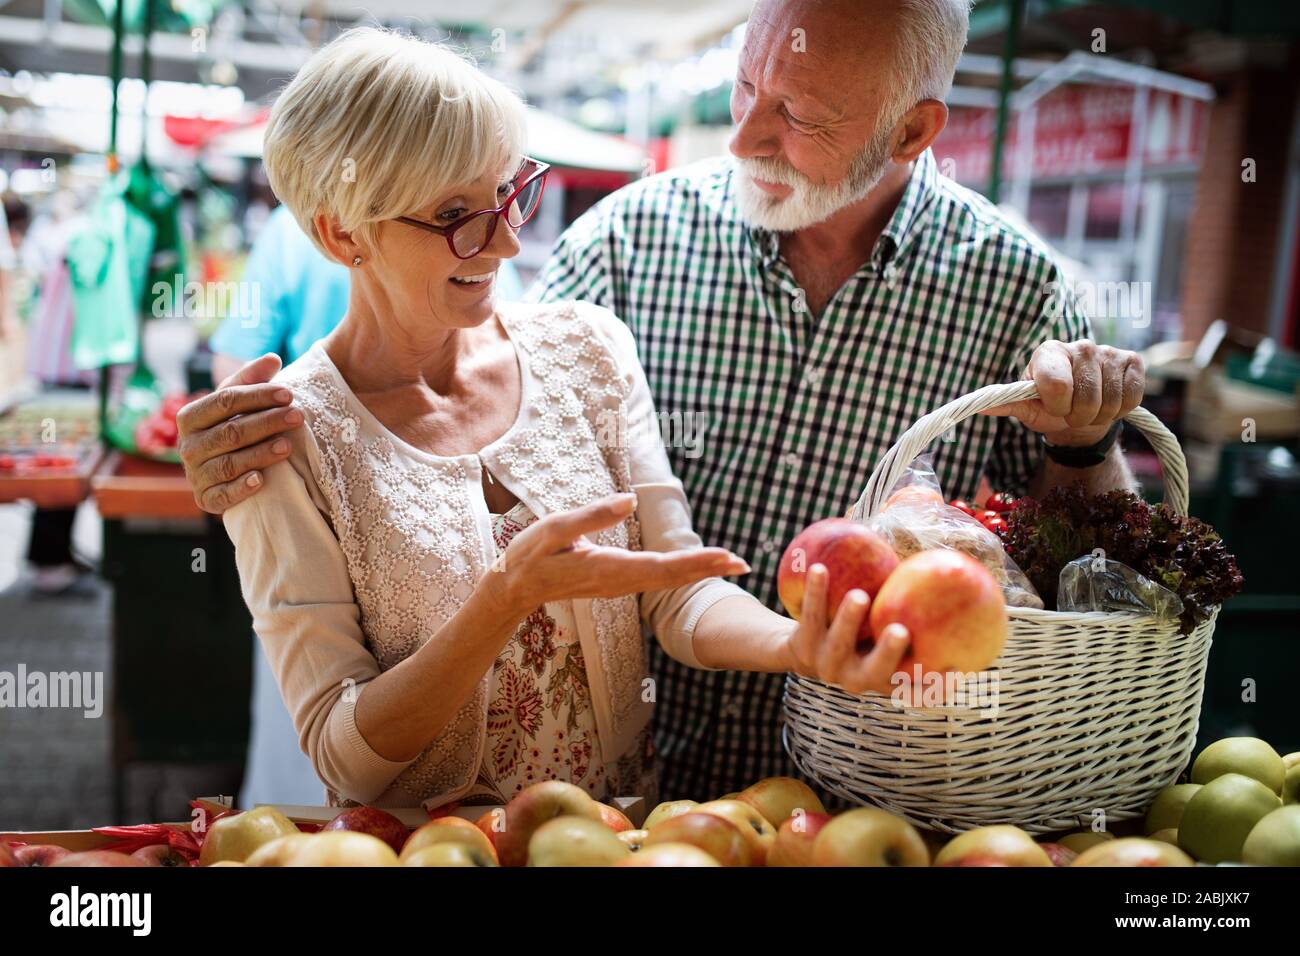 Magnifique Portrait de couple de personnes âgées dans le marché alimentaire buing Banque D'Images